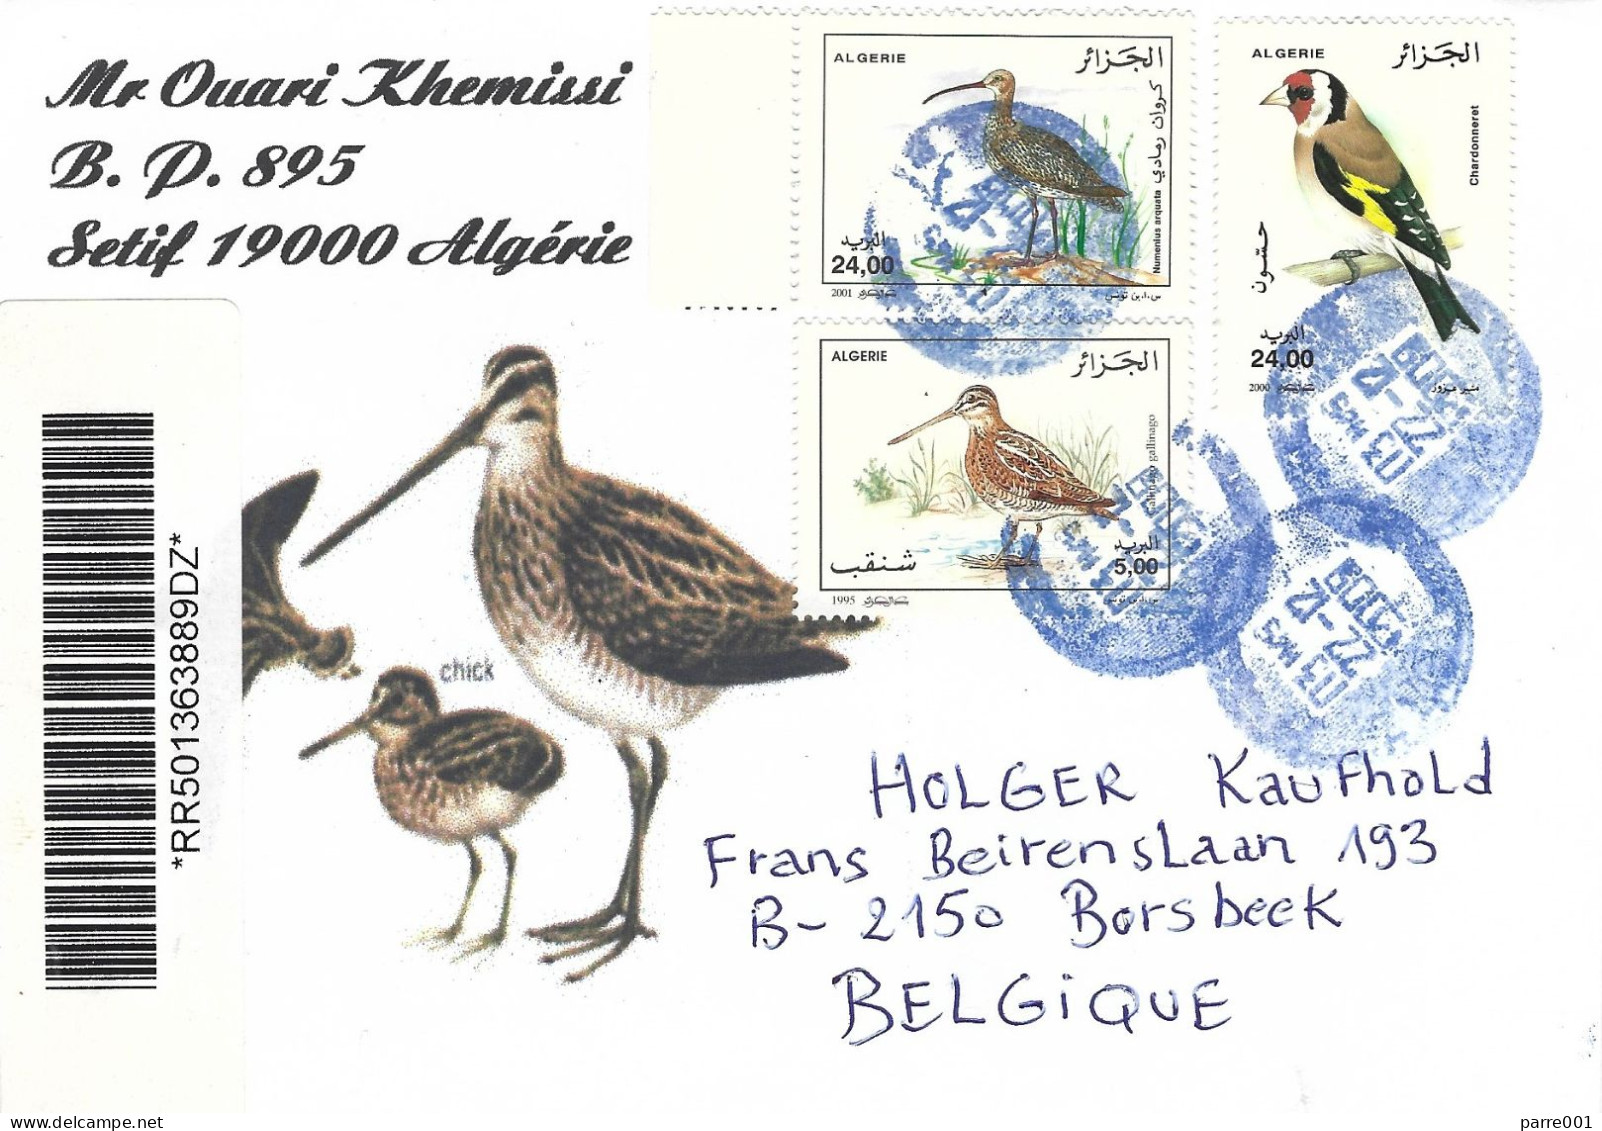 Algeria Algerie 2009 Alger Gold Finch Common Curlew Numenius Arquata Registered Cover - Uccelli Canterini Ed Arboricoli